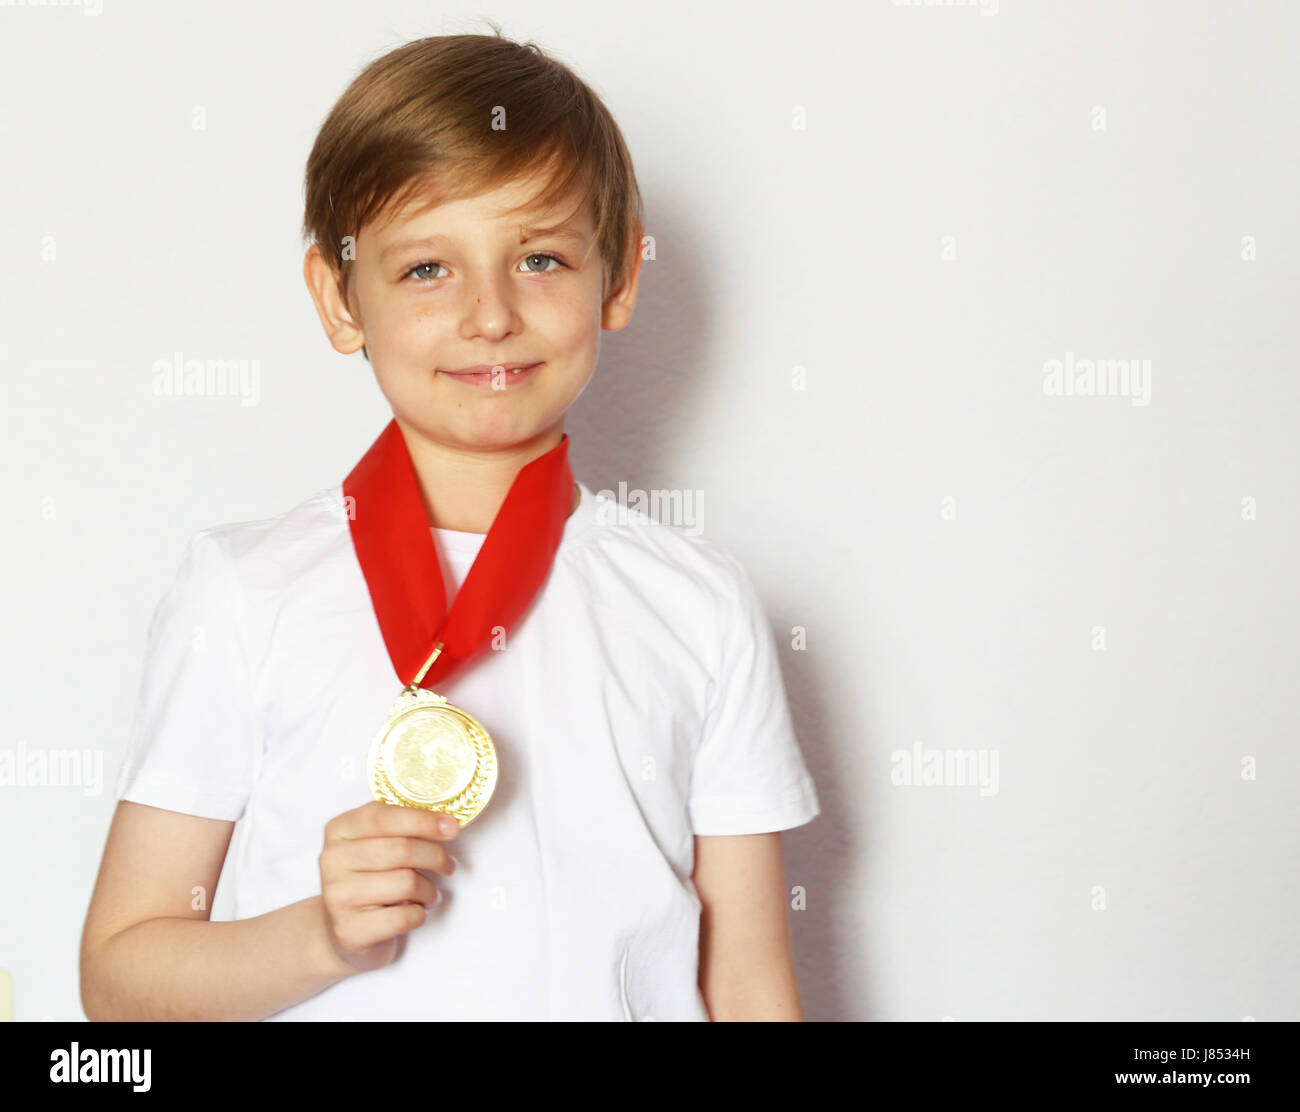 Süße blonde junge mit Goldmedaillen-Gewinner Stockfoto